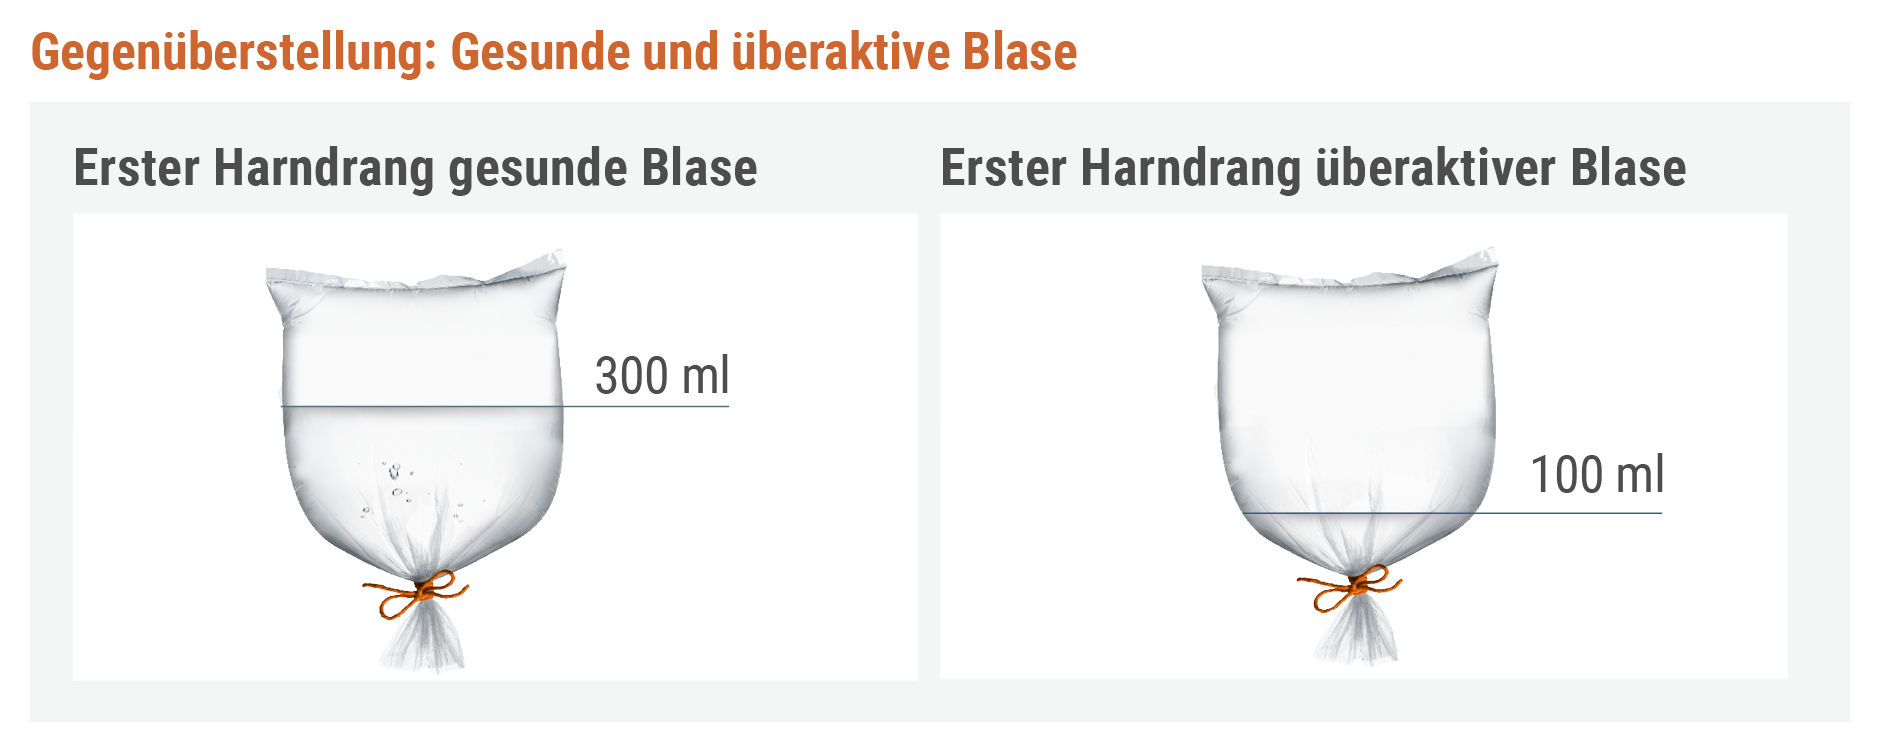 ast_blase-ok_Verstehen_So-funktioniert-die-Blase_4